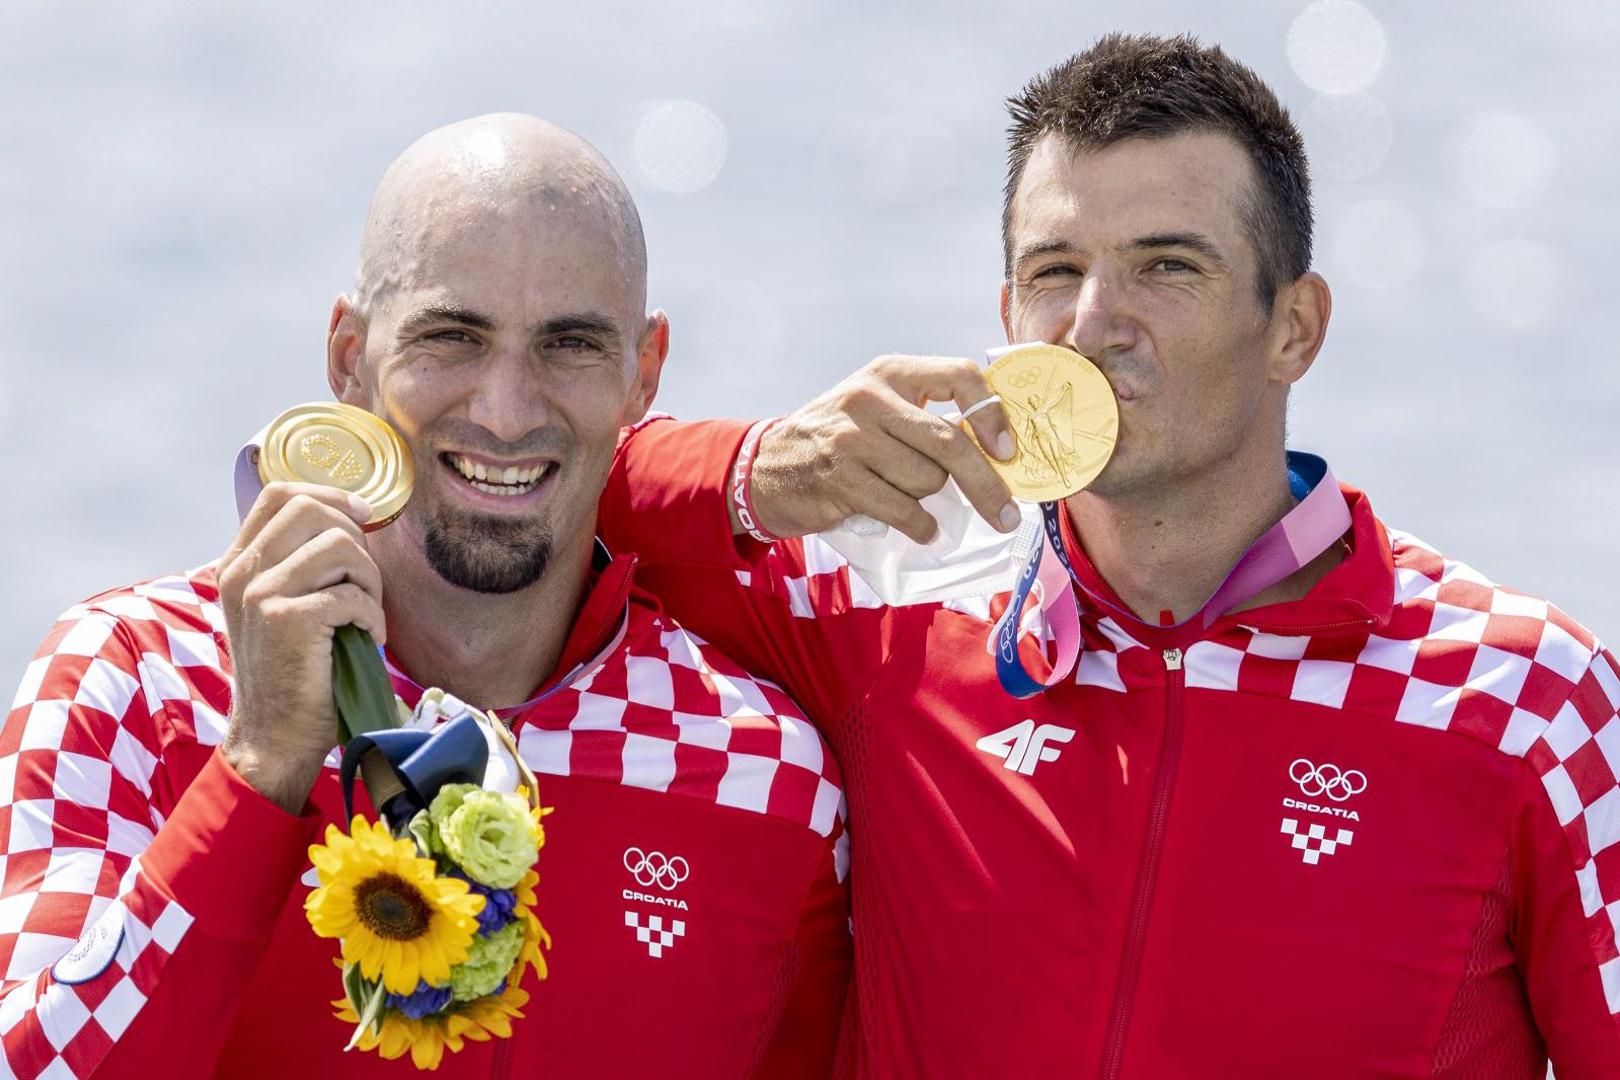 Braća Sinković, Martin i Valent, osvojili su zlatnu medalju u utrci dvojac bez kormilara na veslačkoj stazi.

